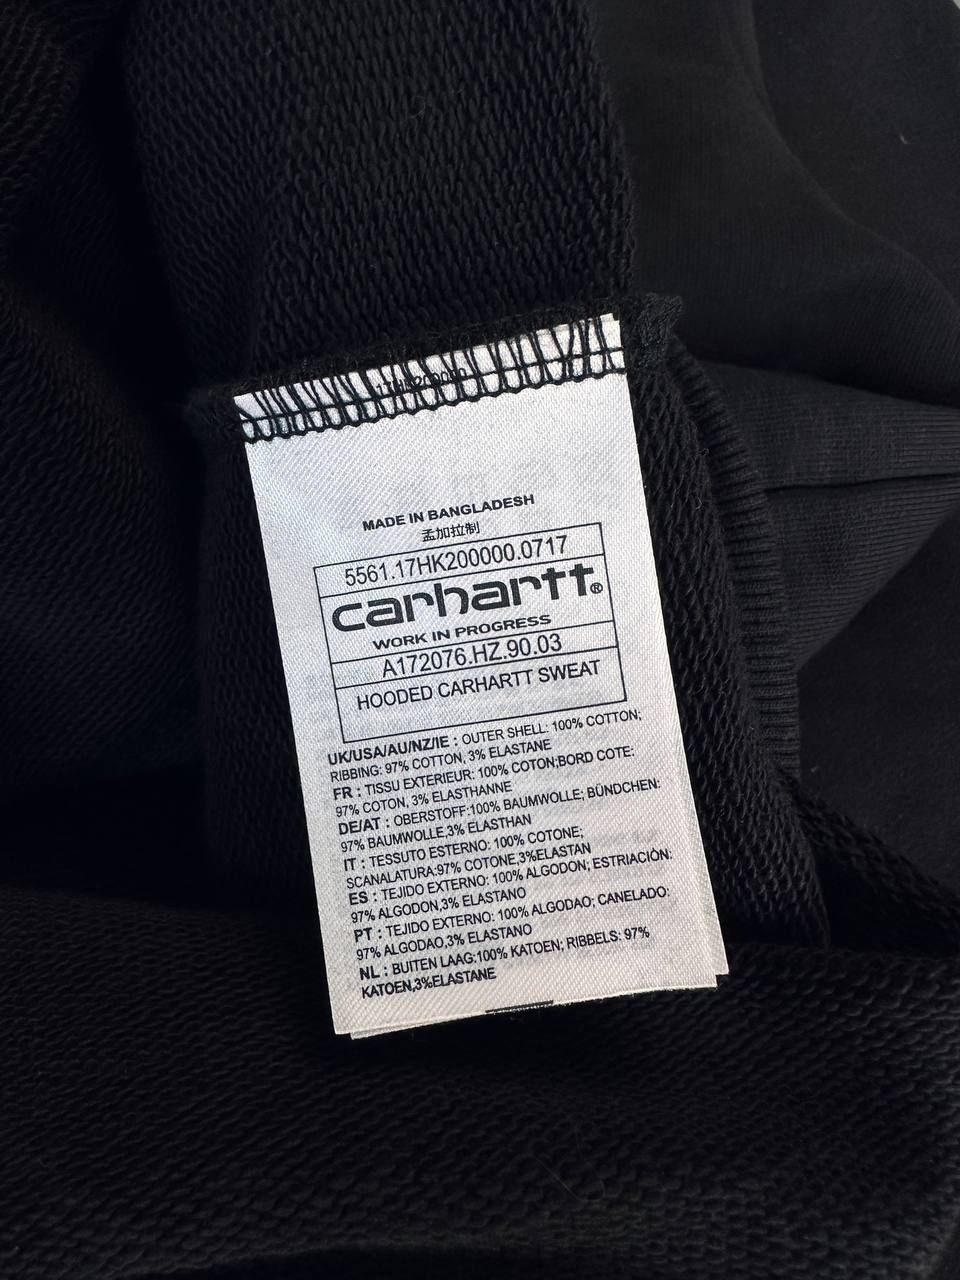 Carhartt hoodie худі.New hooded sweat,M,L,Xl